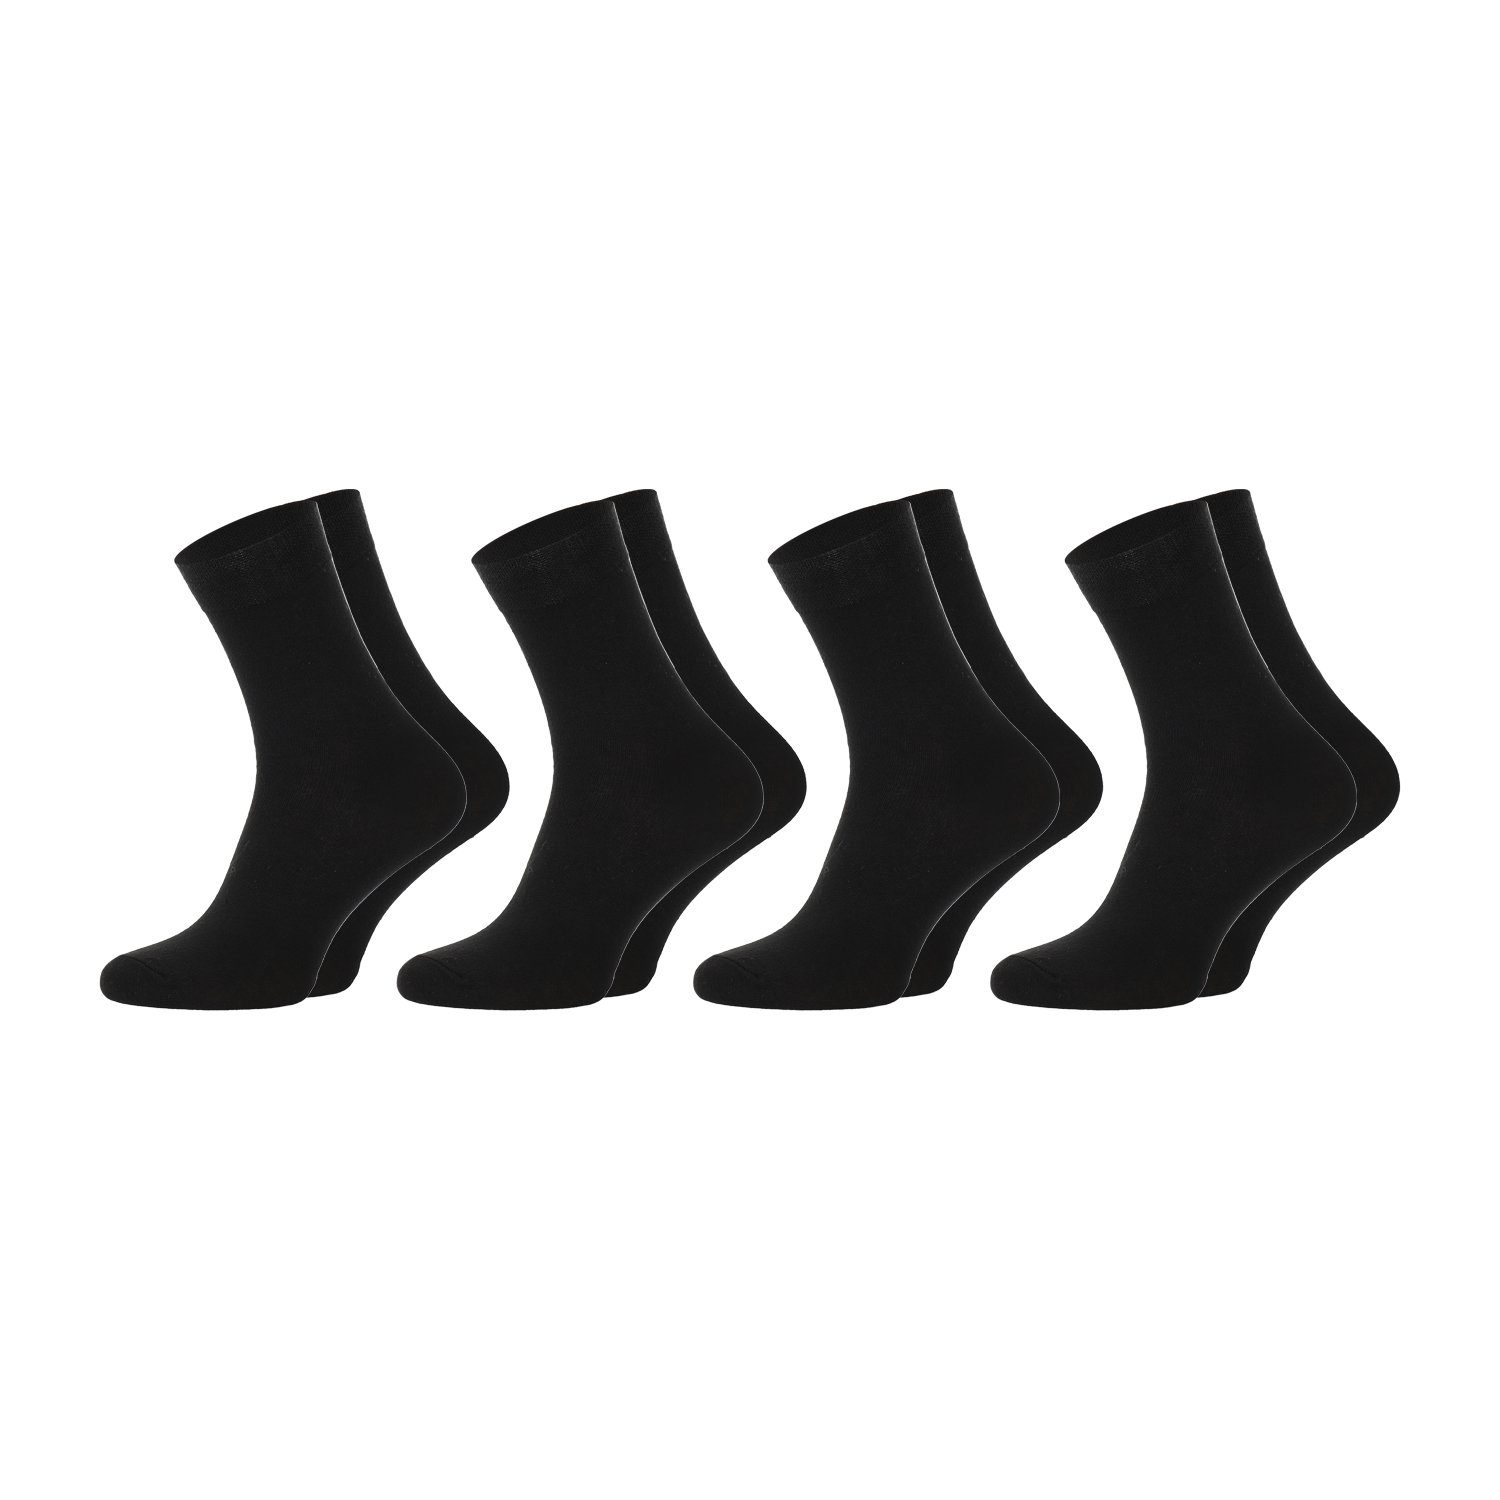 Chili Lifestyle Strümpfe Herren Diabetiker Socke, 4 Paar, Kurzschaft, Weichbund ohne Gummidruck